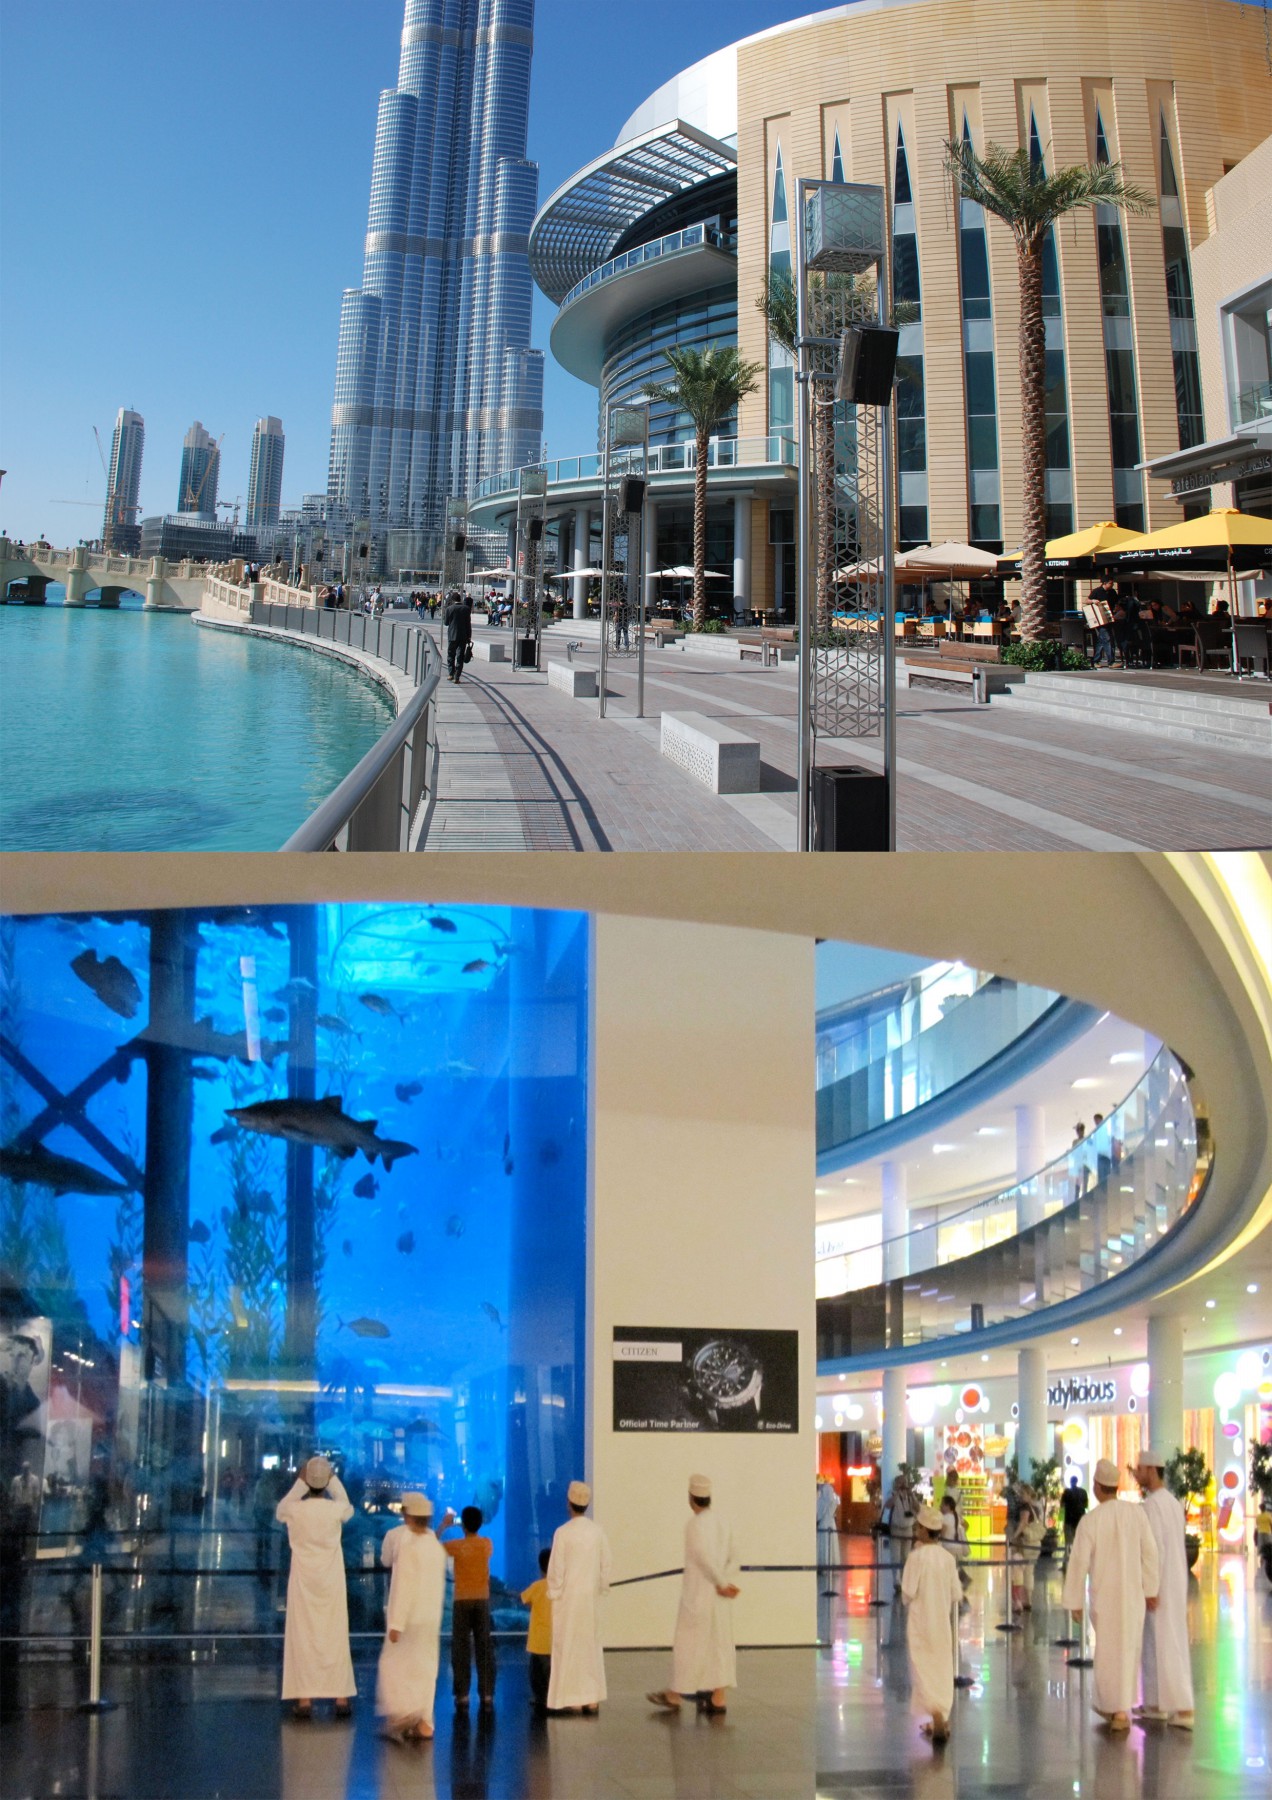 Dubai Mall Fountain and Fish Aquarium The Mall Of Dubai UAE Beautiful Global